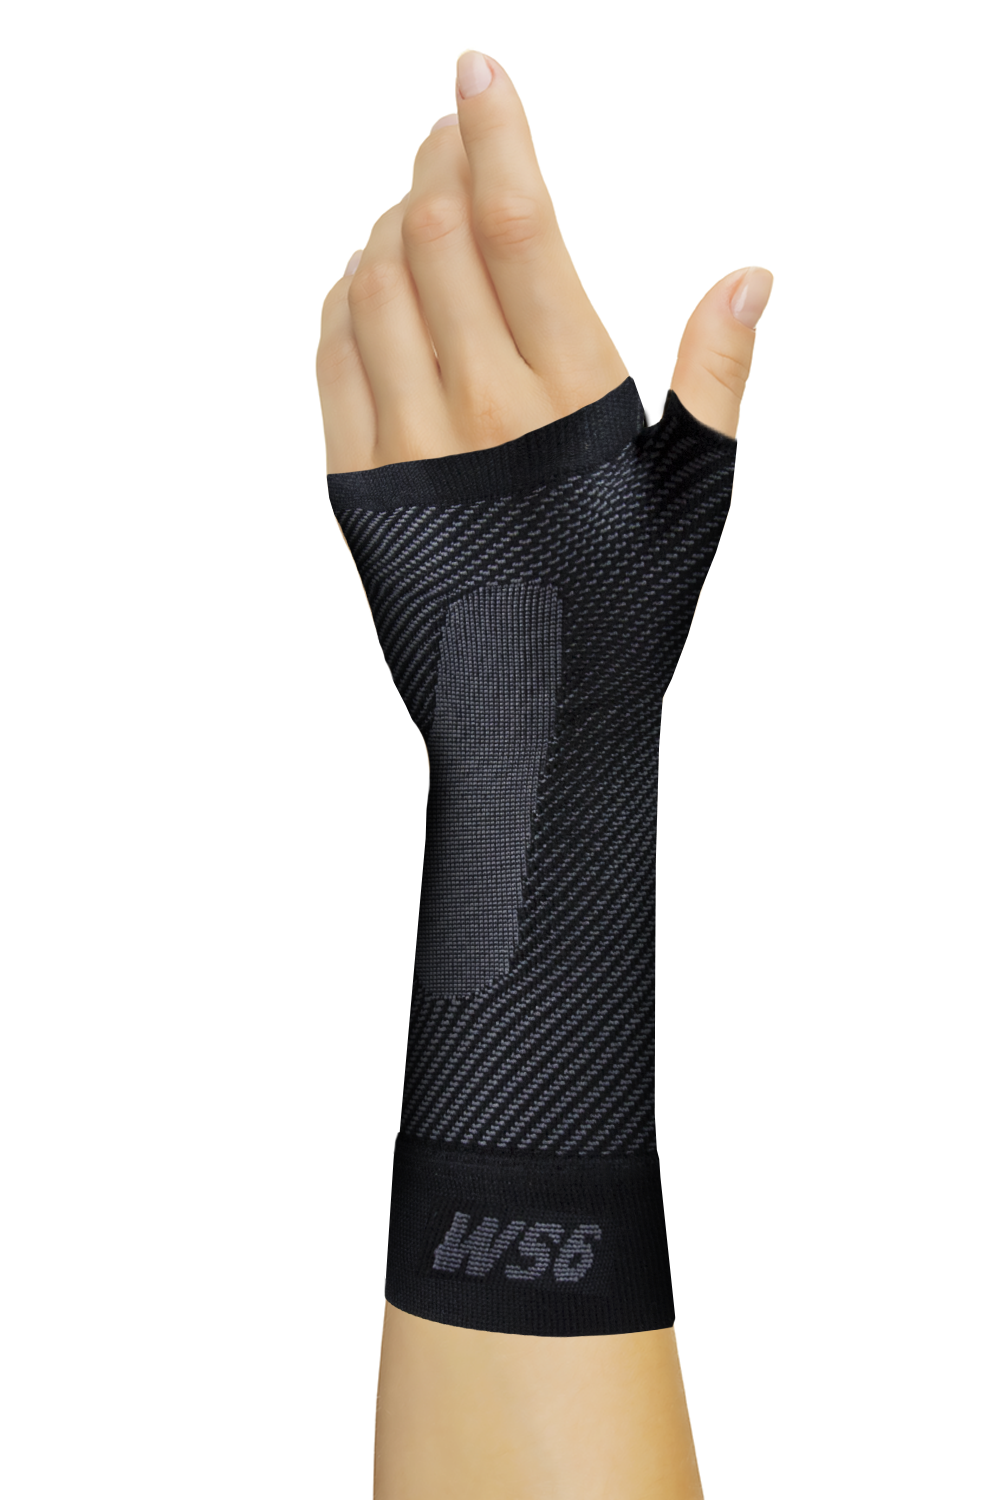 Orthosleeve Ws6 Wrist Sleeve Black X-Large image 0